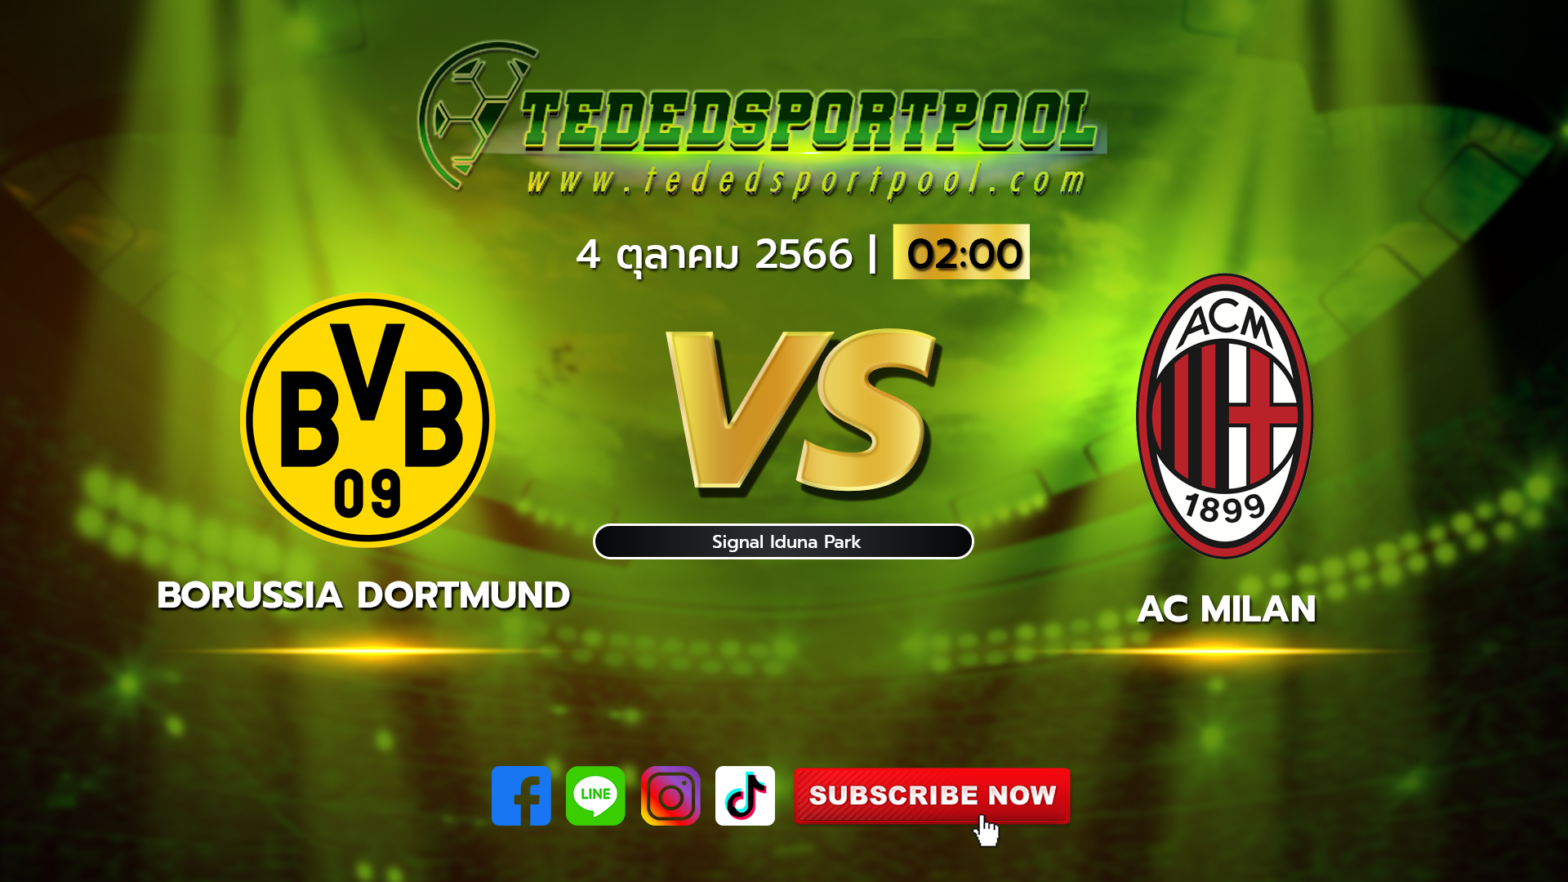 Borussia_Dortmund_vs_AC_Milan